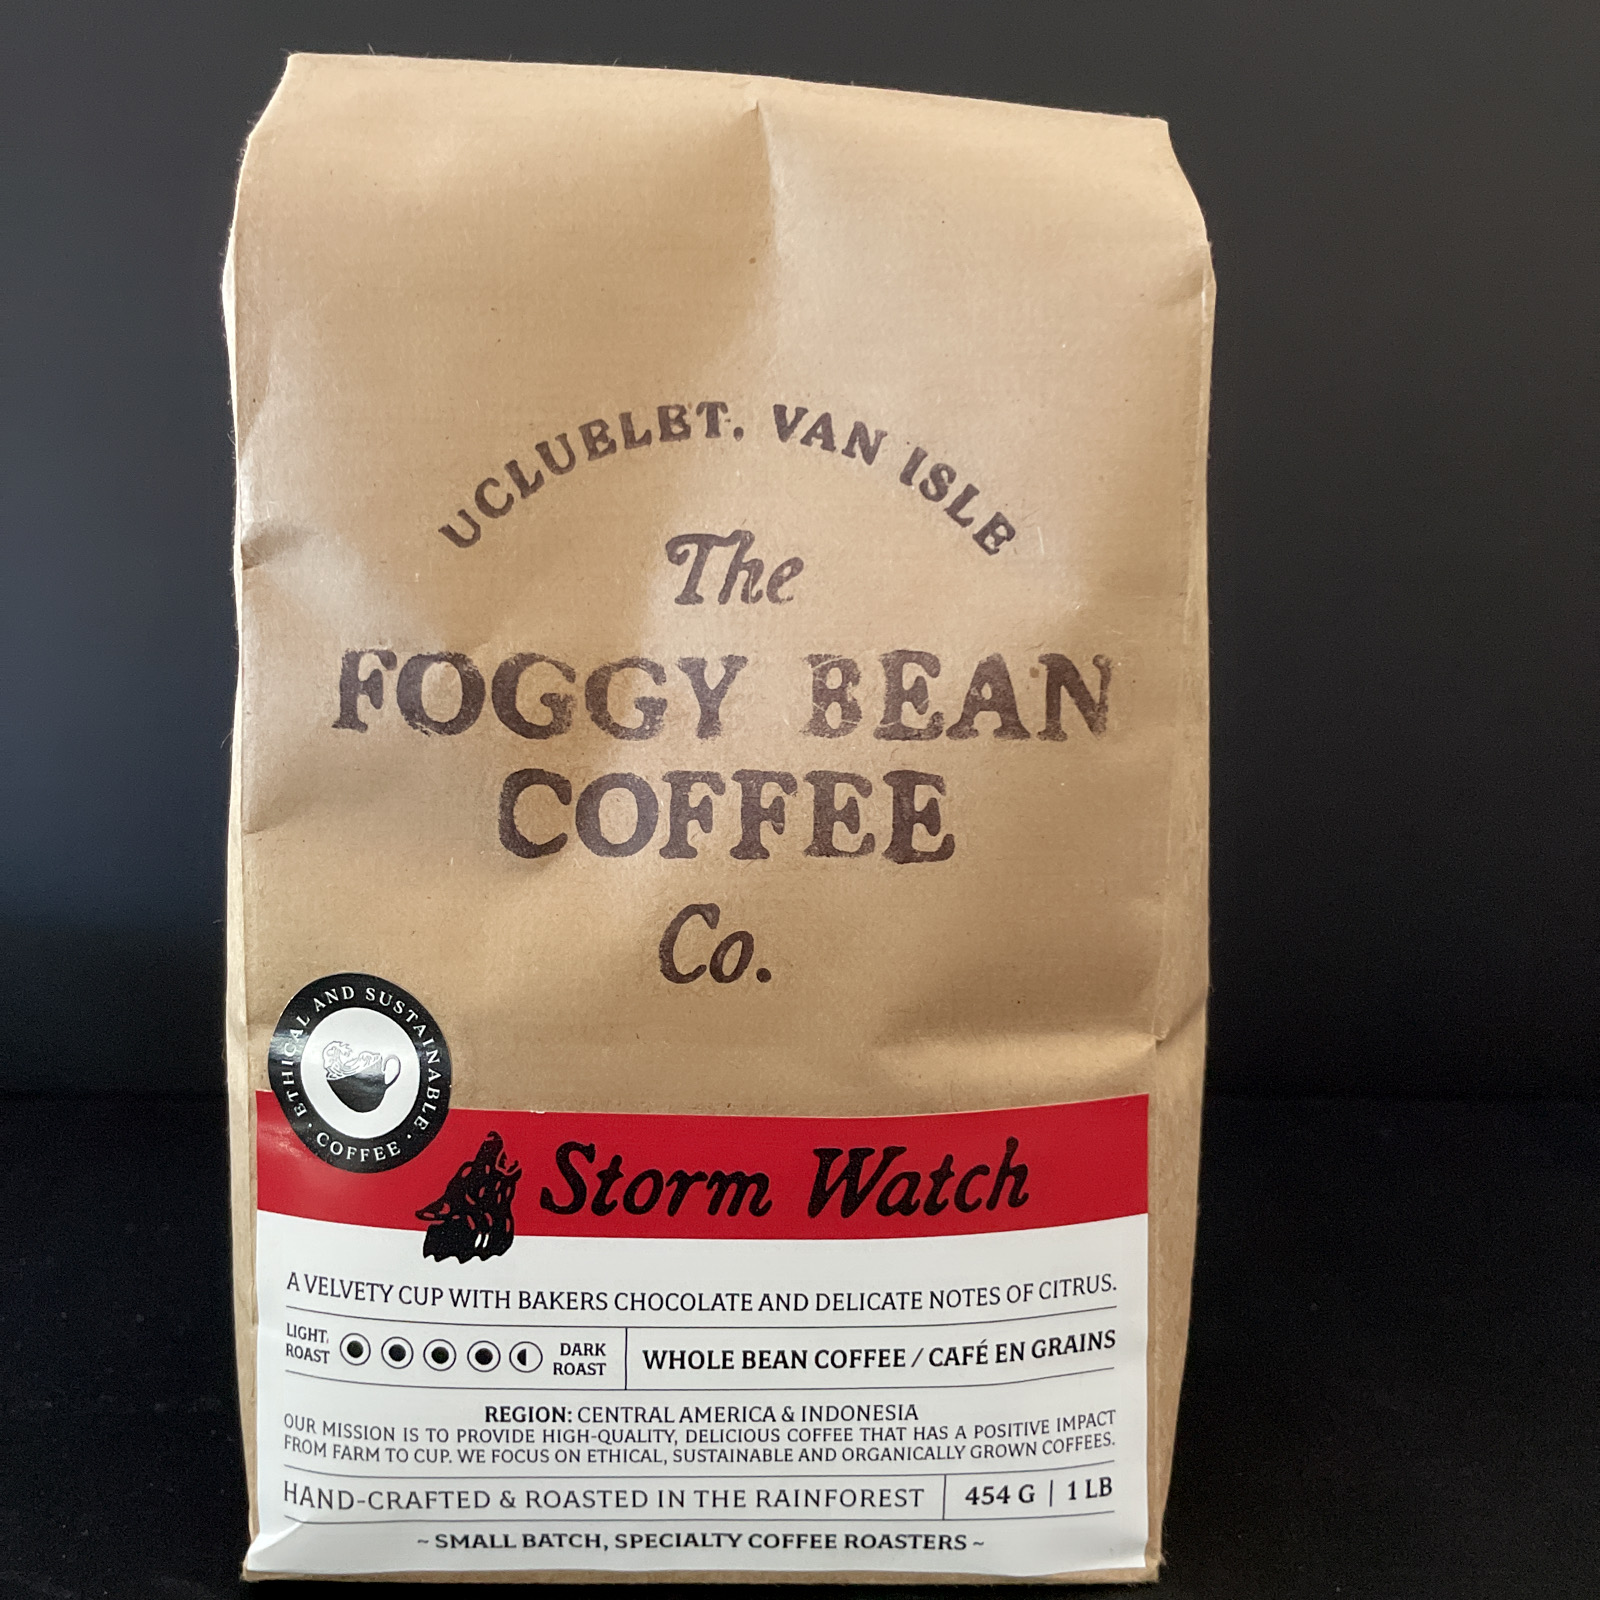 Foggy Bean Coffee: Storm Watch